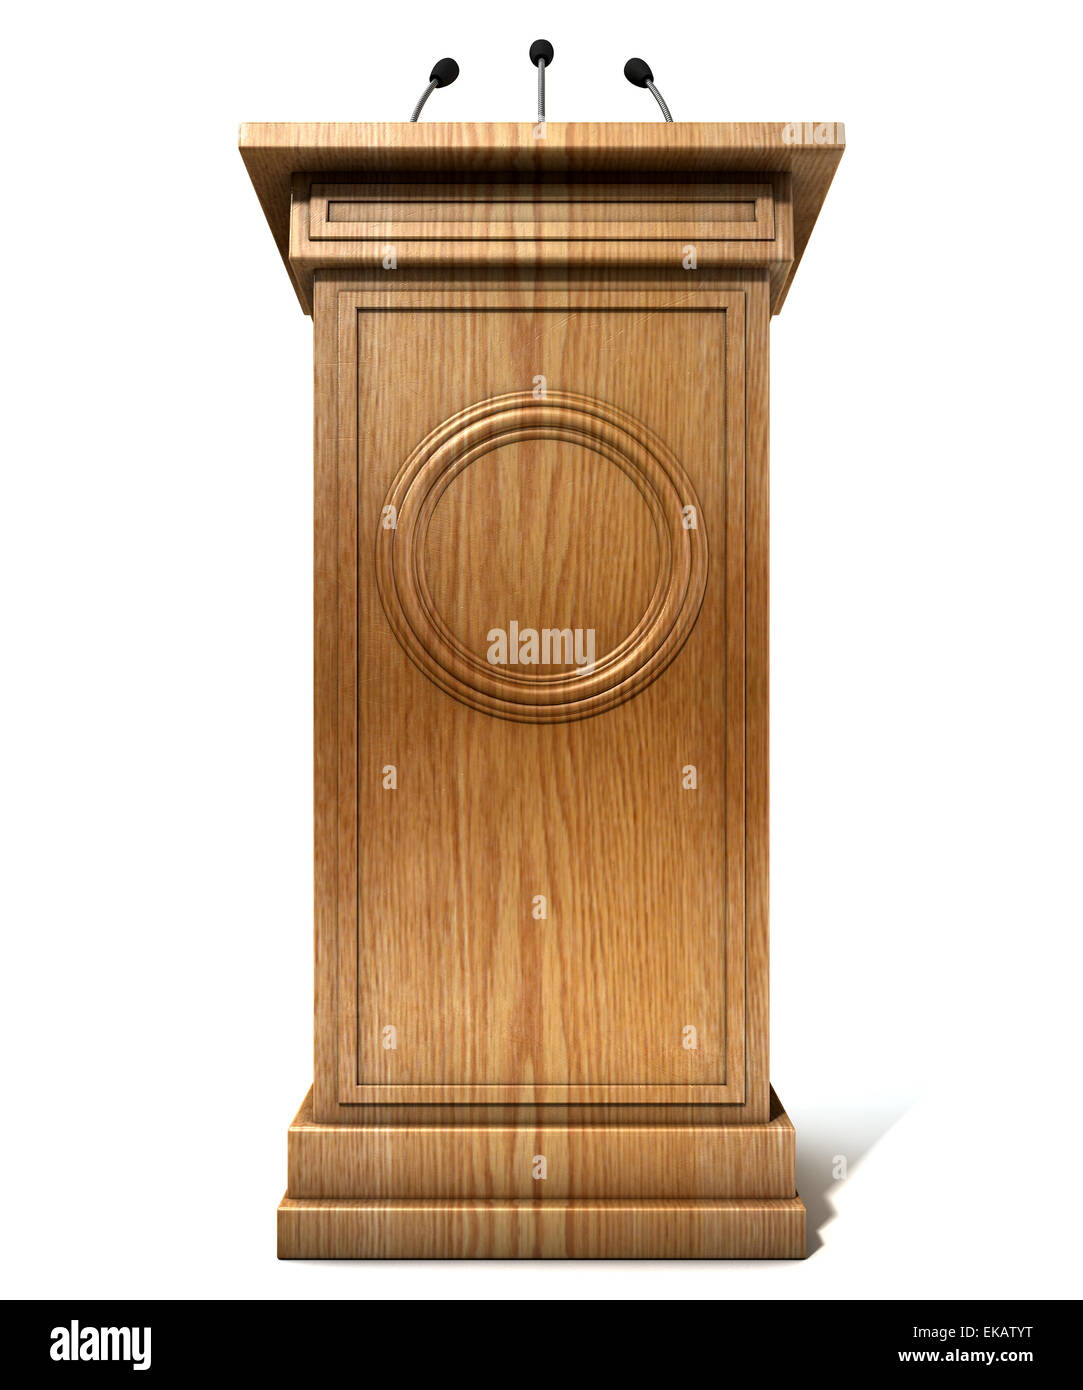 Eine hölzerne Rede Podium mit drei kleinen Mikrofonen befestigt auf einem isolierten weißen Studio-Hintergrund Stockfoto